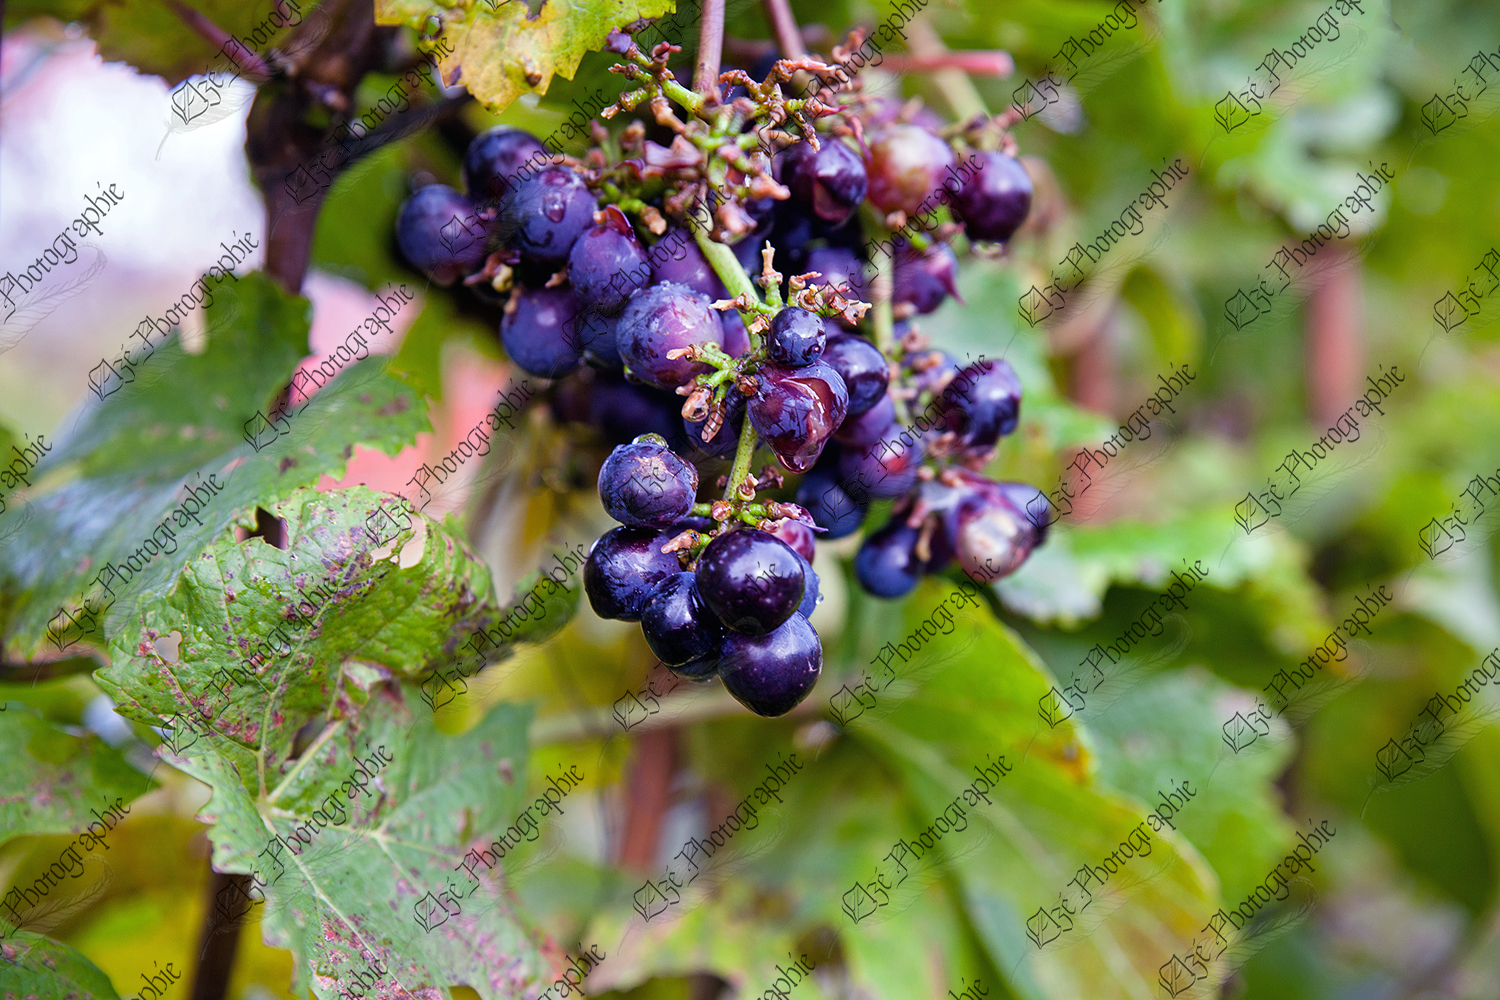 elze_photo_3305_vignoble_raisins_automne_grapefruit_fruit